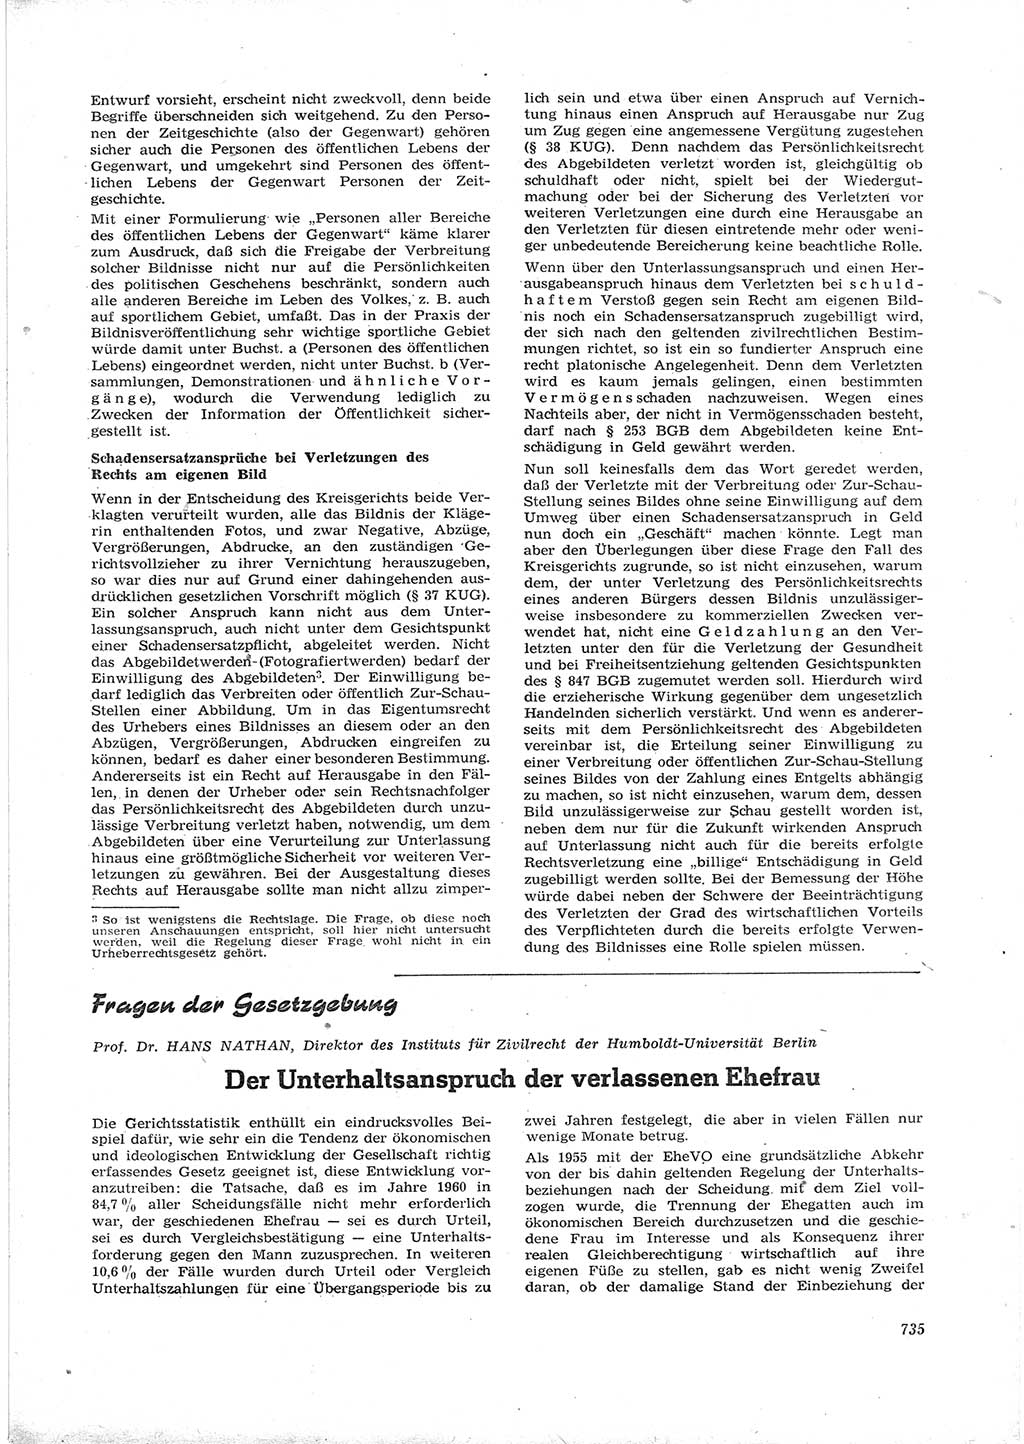 Neue Justiz (NJ), Zeitschrift für Recht und Rechtswissenschaft [Deutsche Demokratische Republik (DDR)], 16. Jahrgang 1962, Seite 735 (NJ DDR 1962, S. 735)